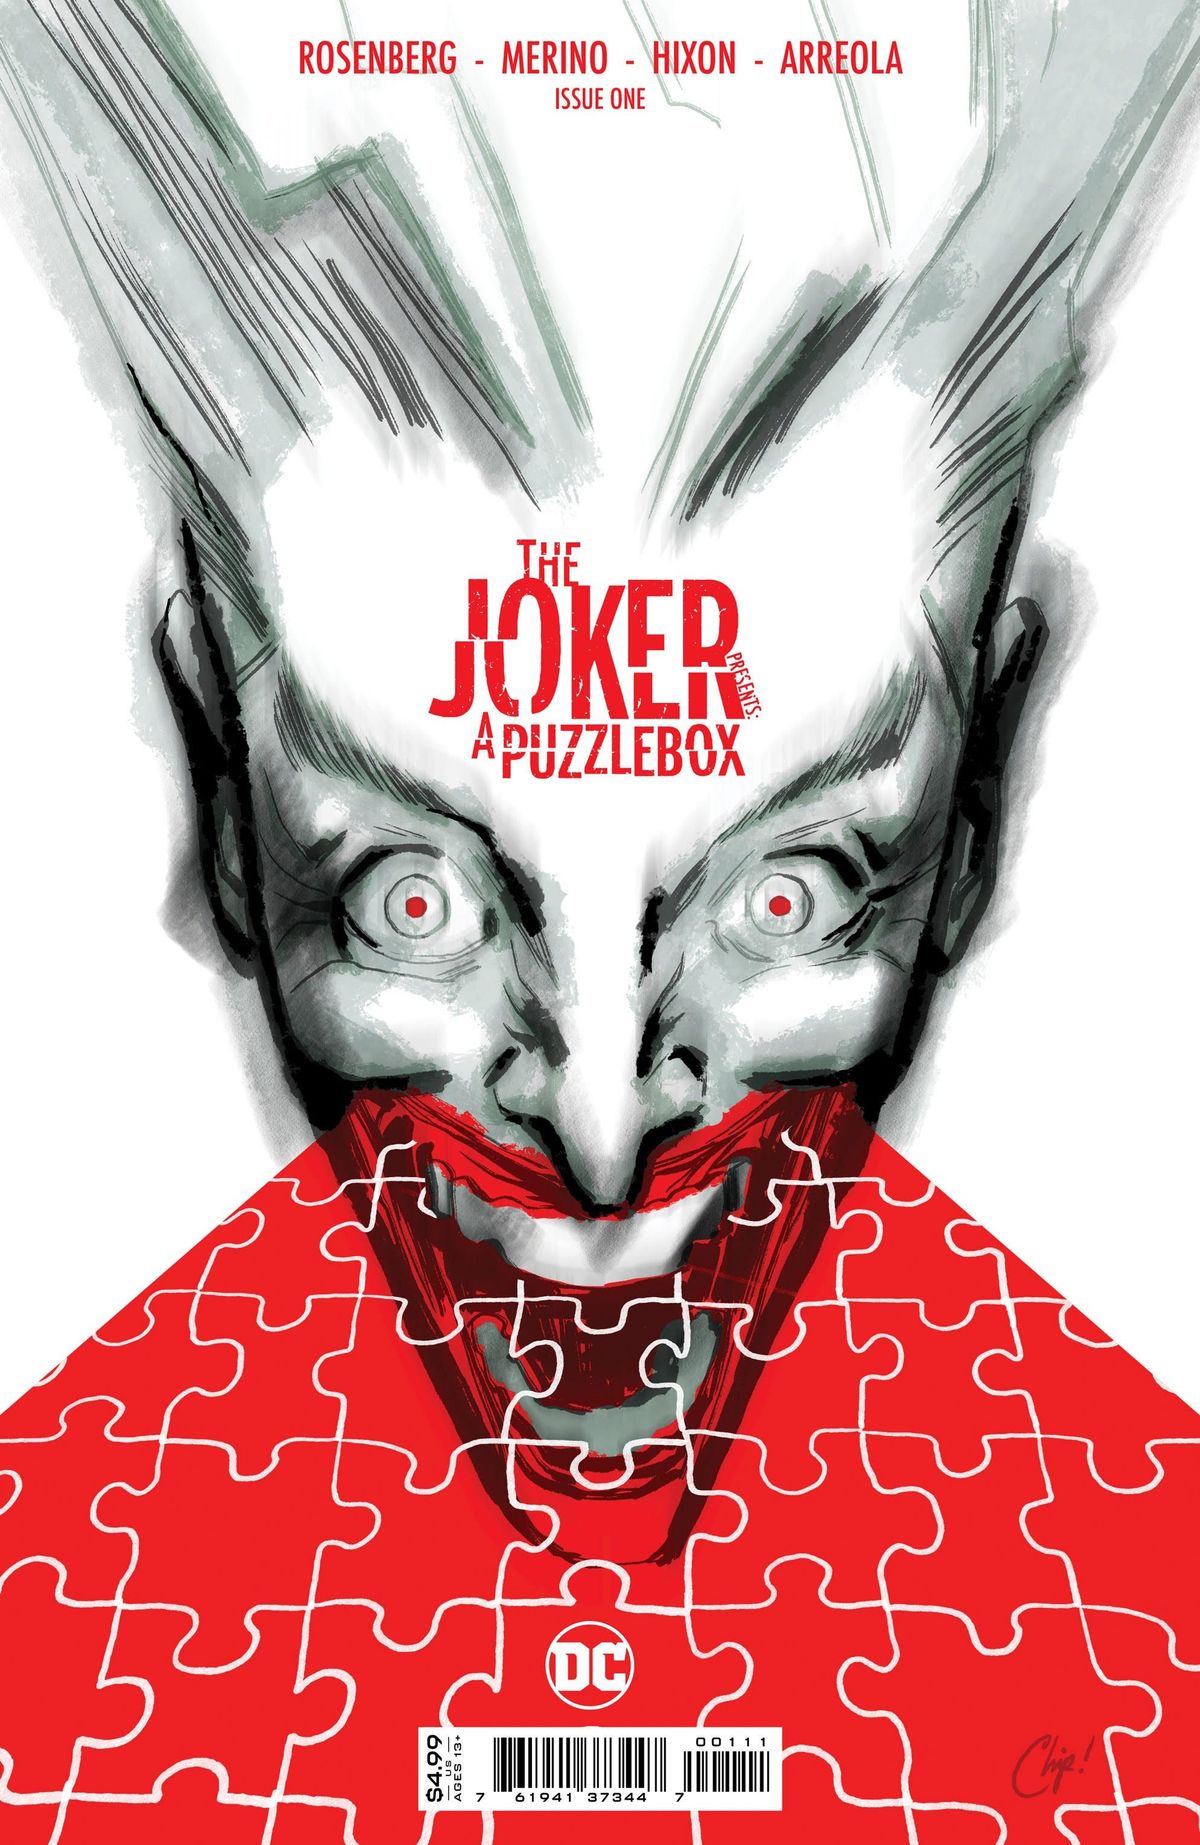 DC julkistaa Murder Mystery -sarjan, jossa Joker on tähtitodistaja